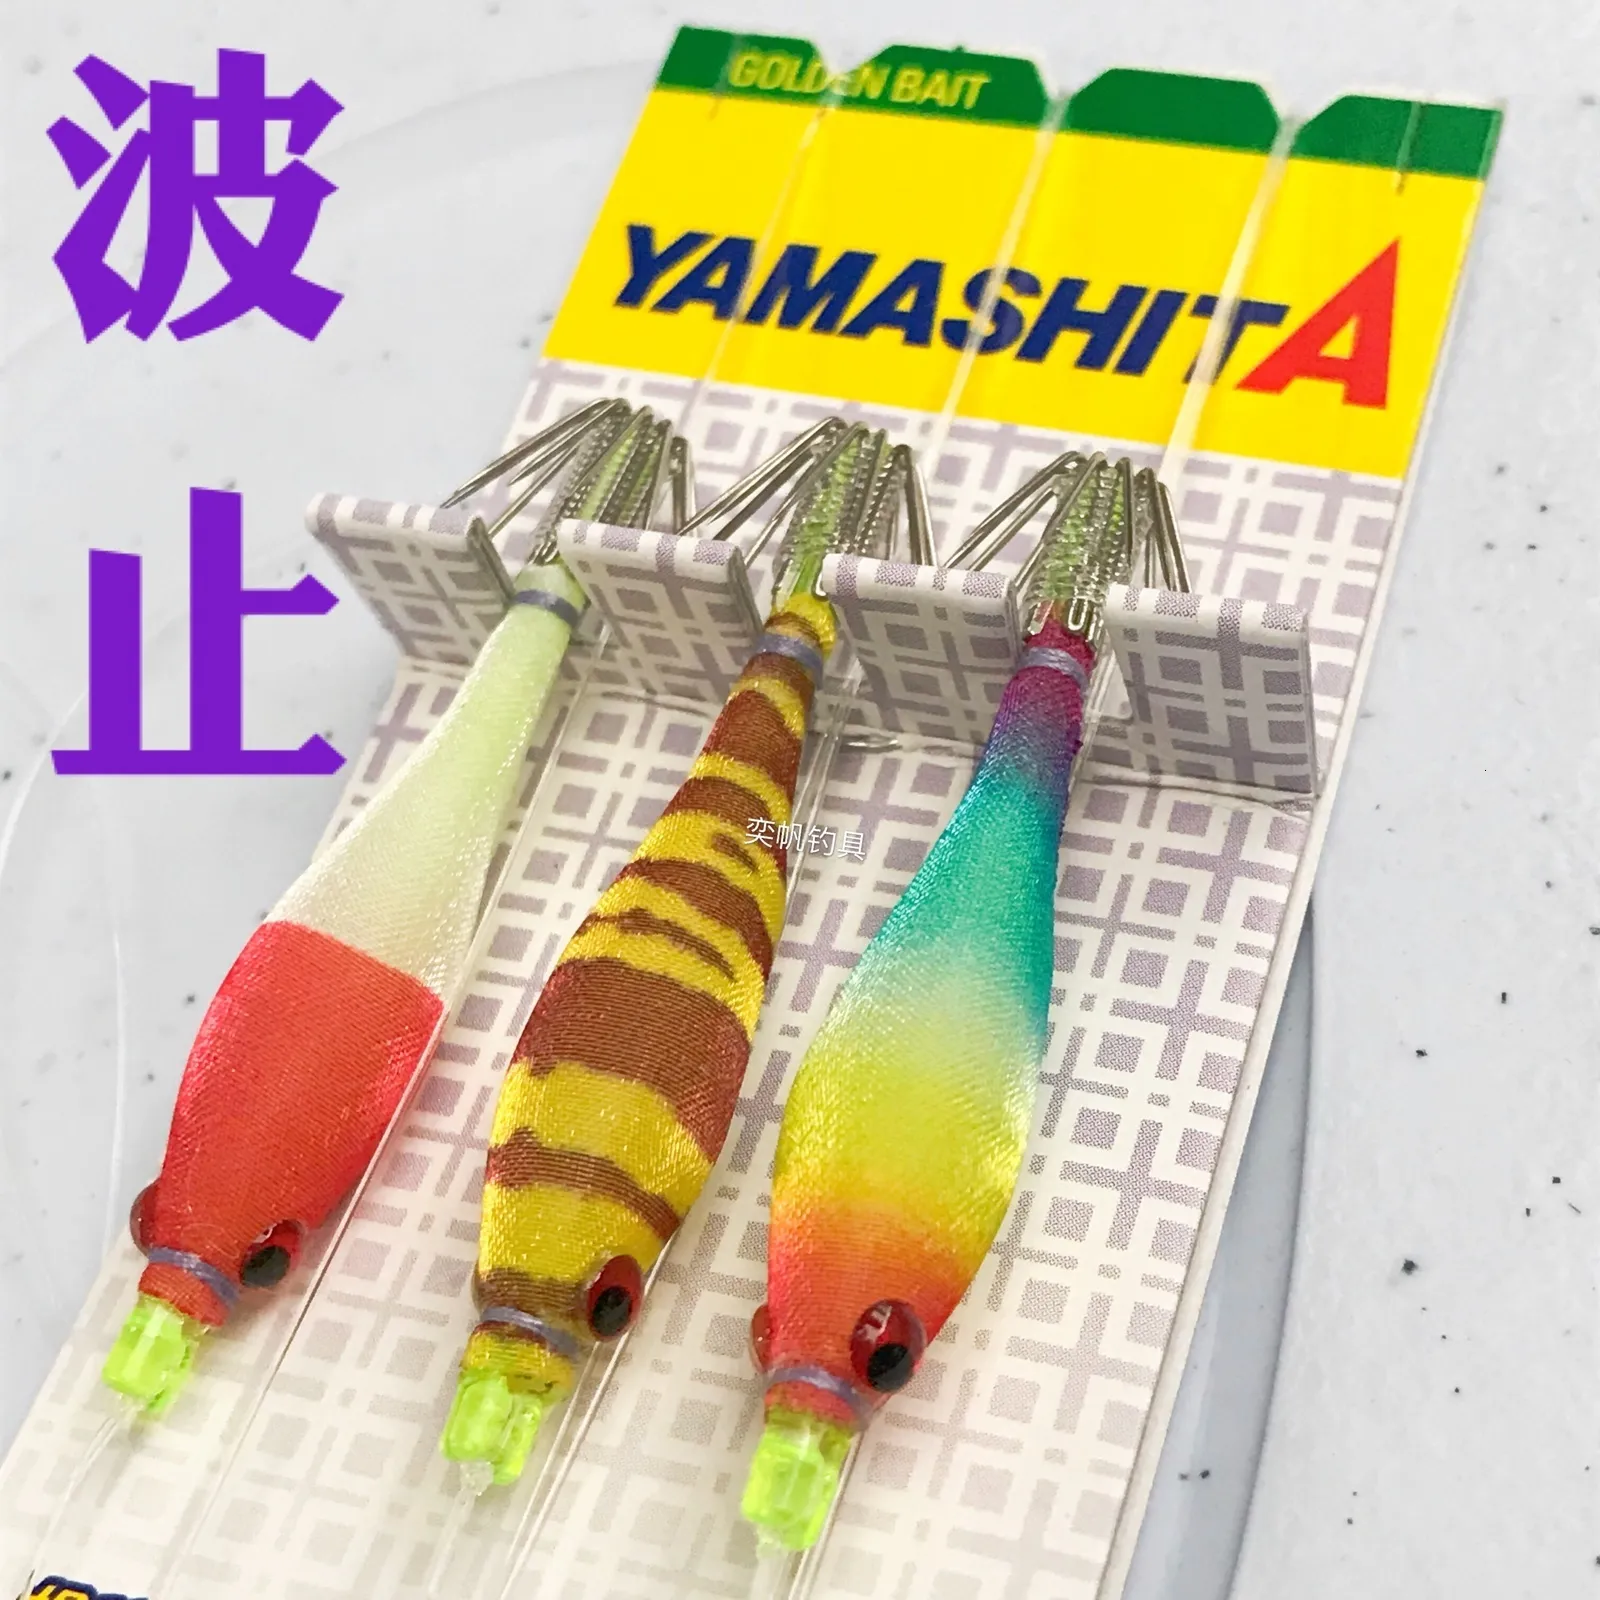 Vishaken Japan YAMASHITA blazen buis sluitingen escent inktvis serie hout garnalen 3 groepen opknoping haak drie vliegen lichtgevende paraplu 230809